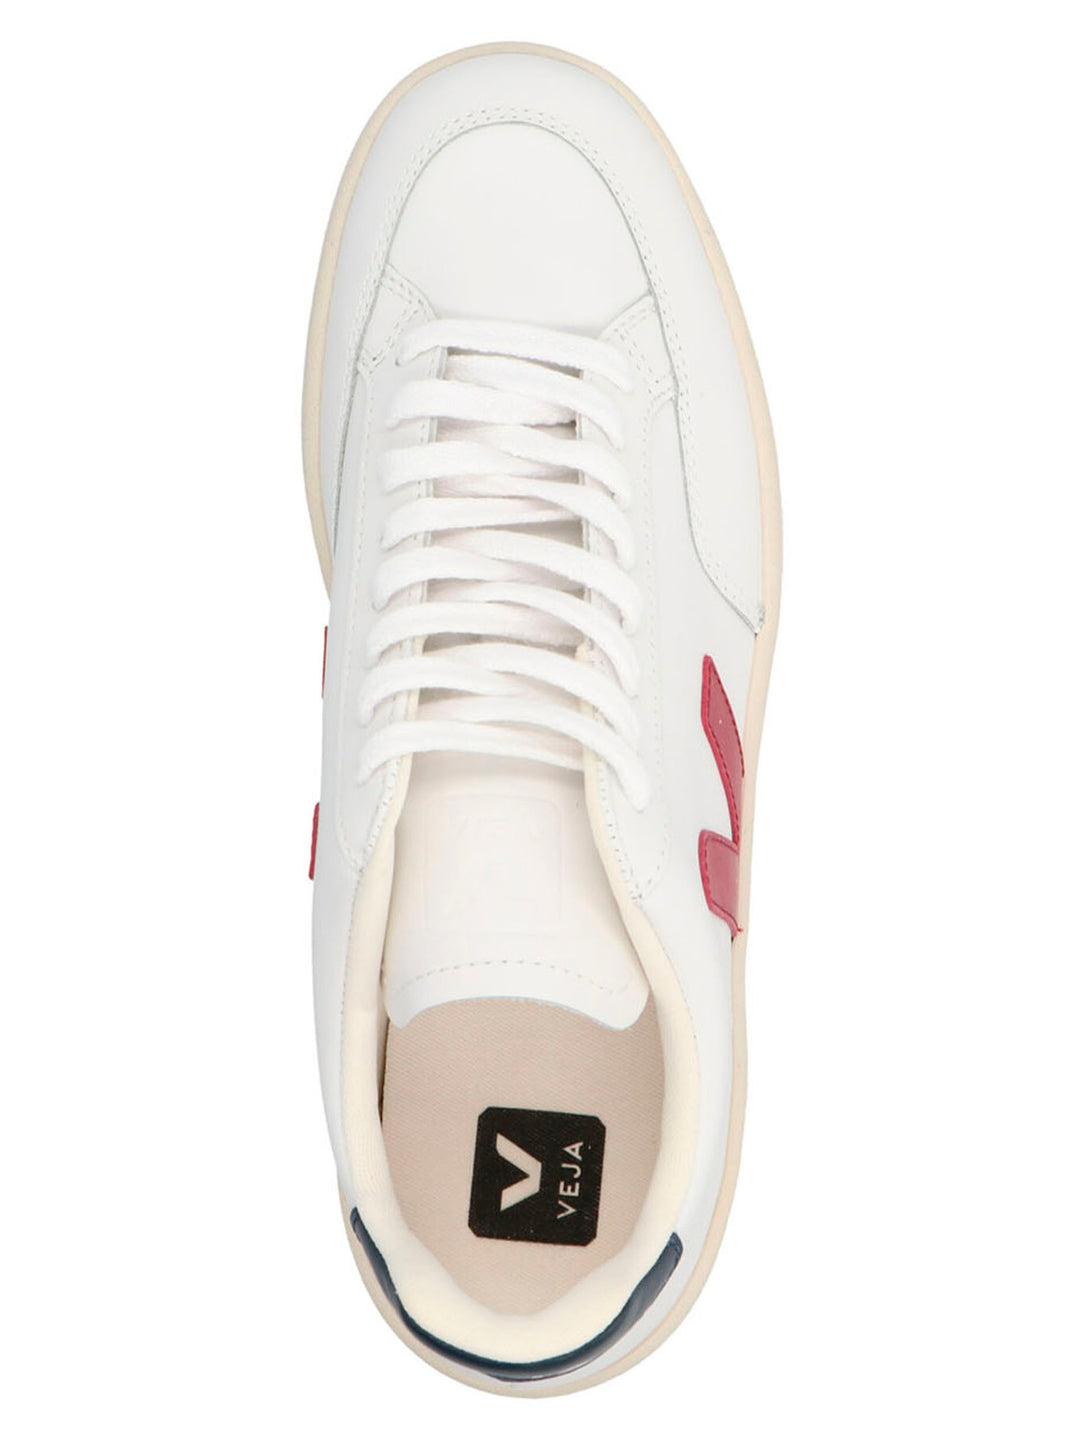 V-12 Sneakers Bianco